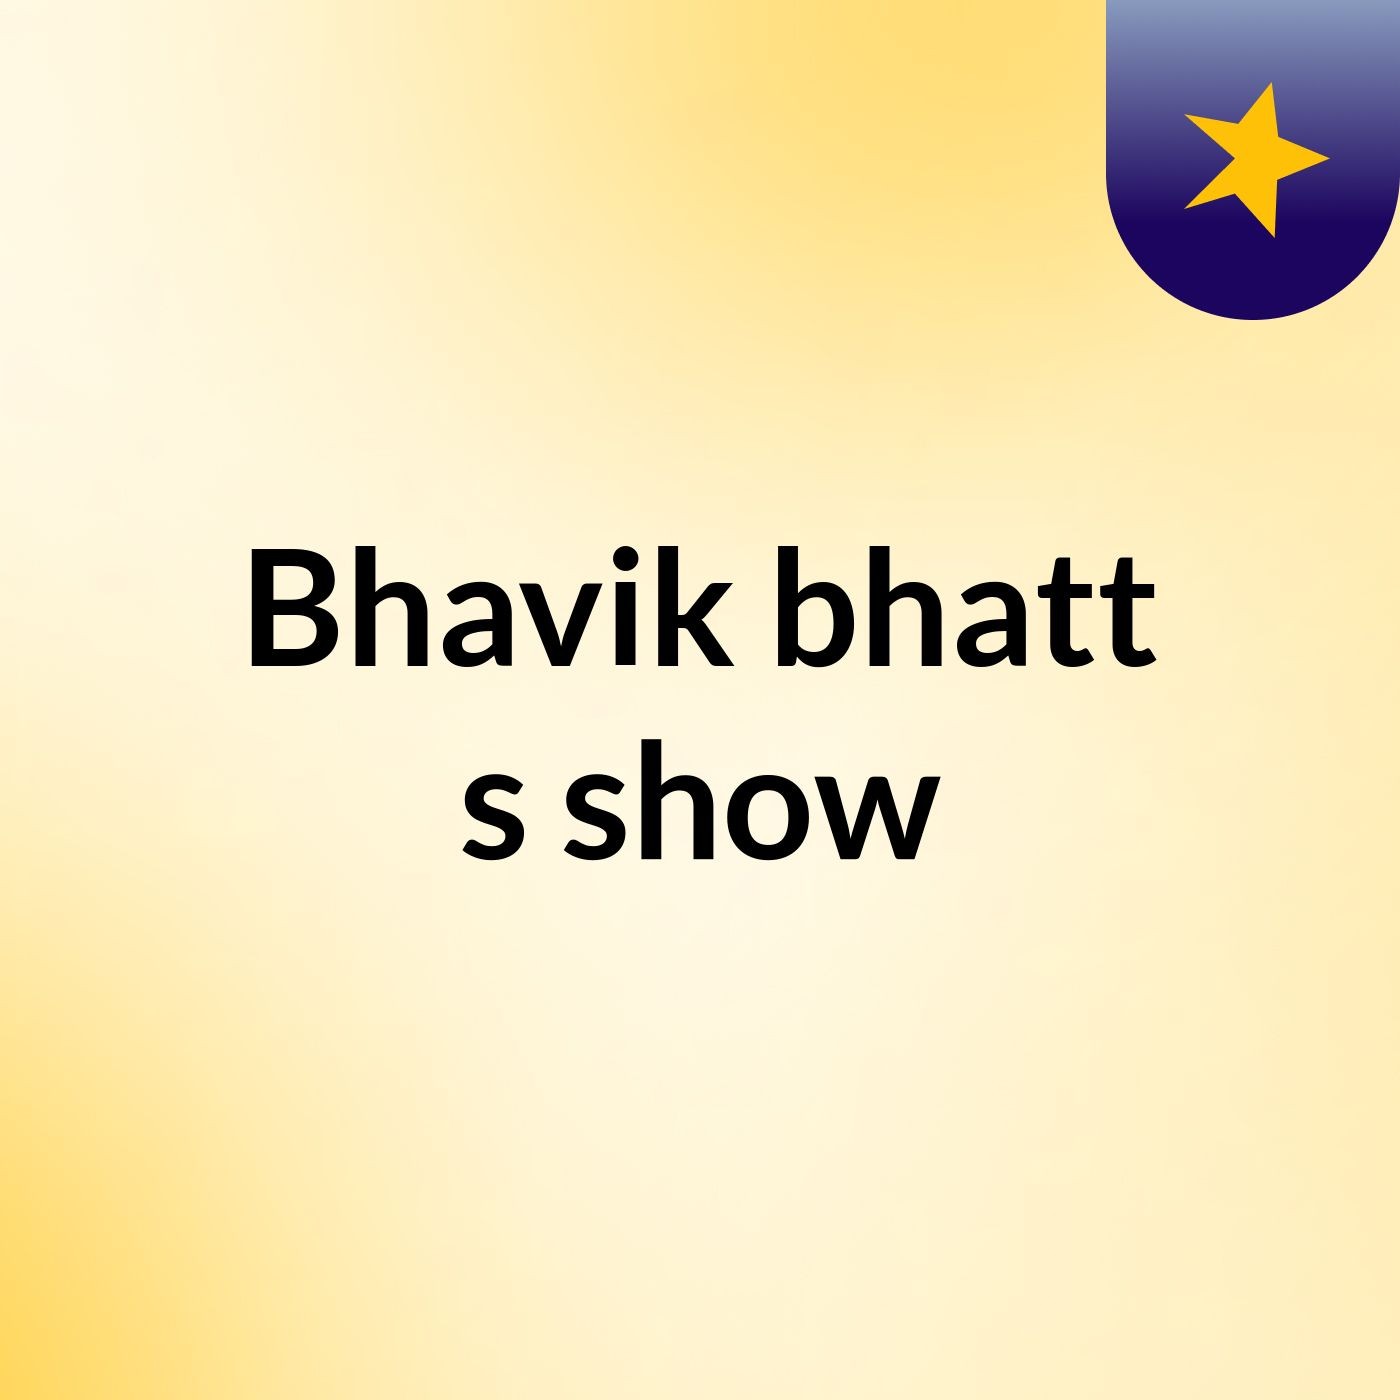 Bhavik bhatt's show